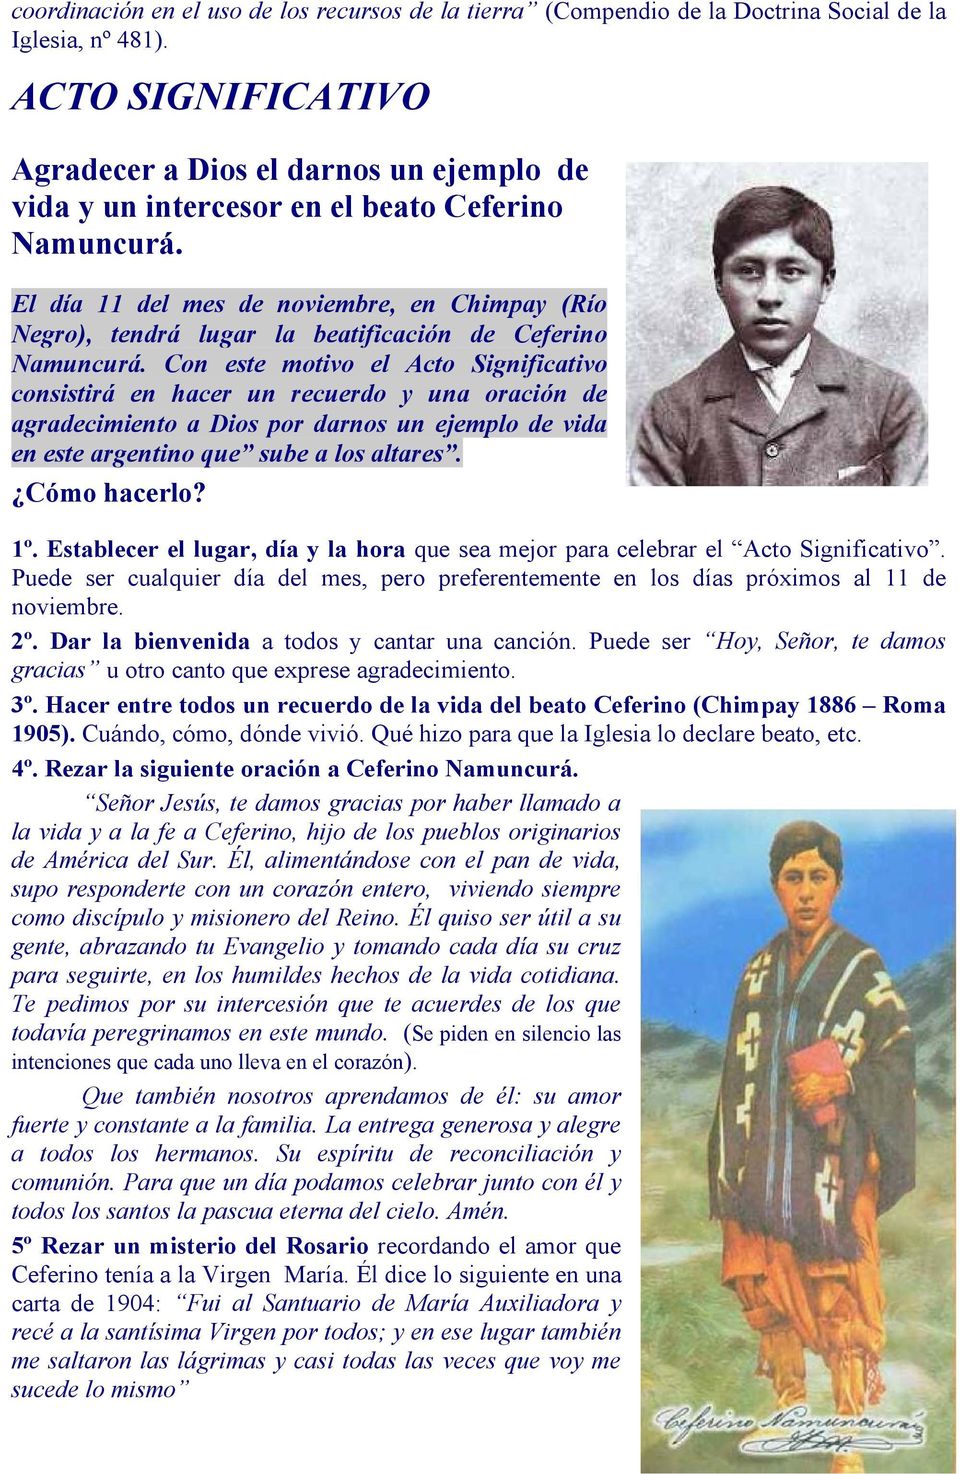 El día 11 del mes de noviembre, en Chimpay (Río Negro), tendrá lugar la beatificación de Ceferino Namuncurá.